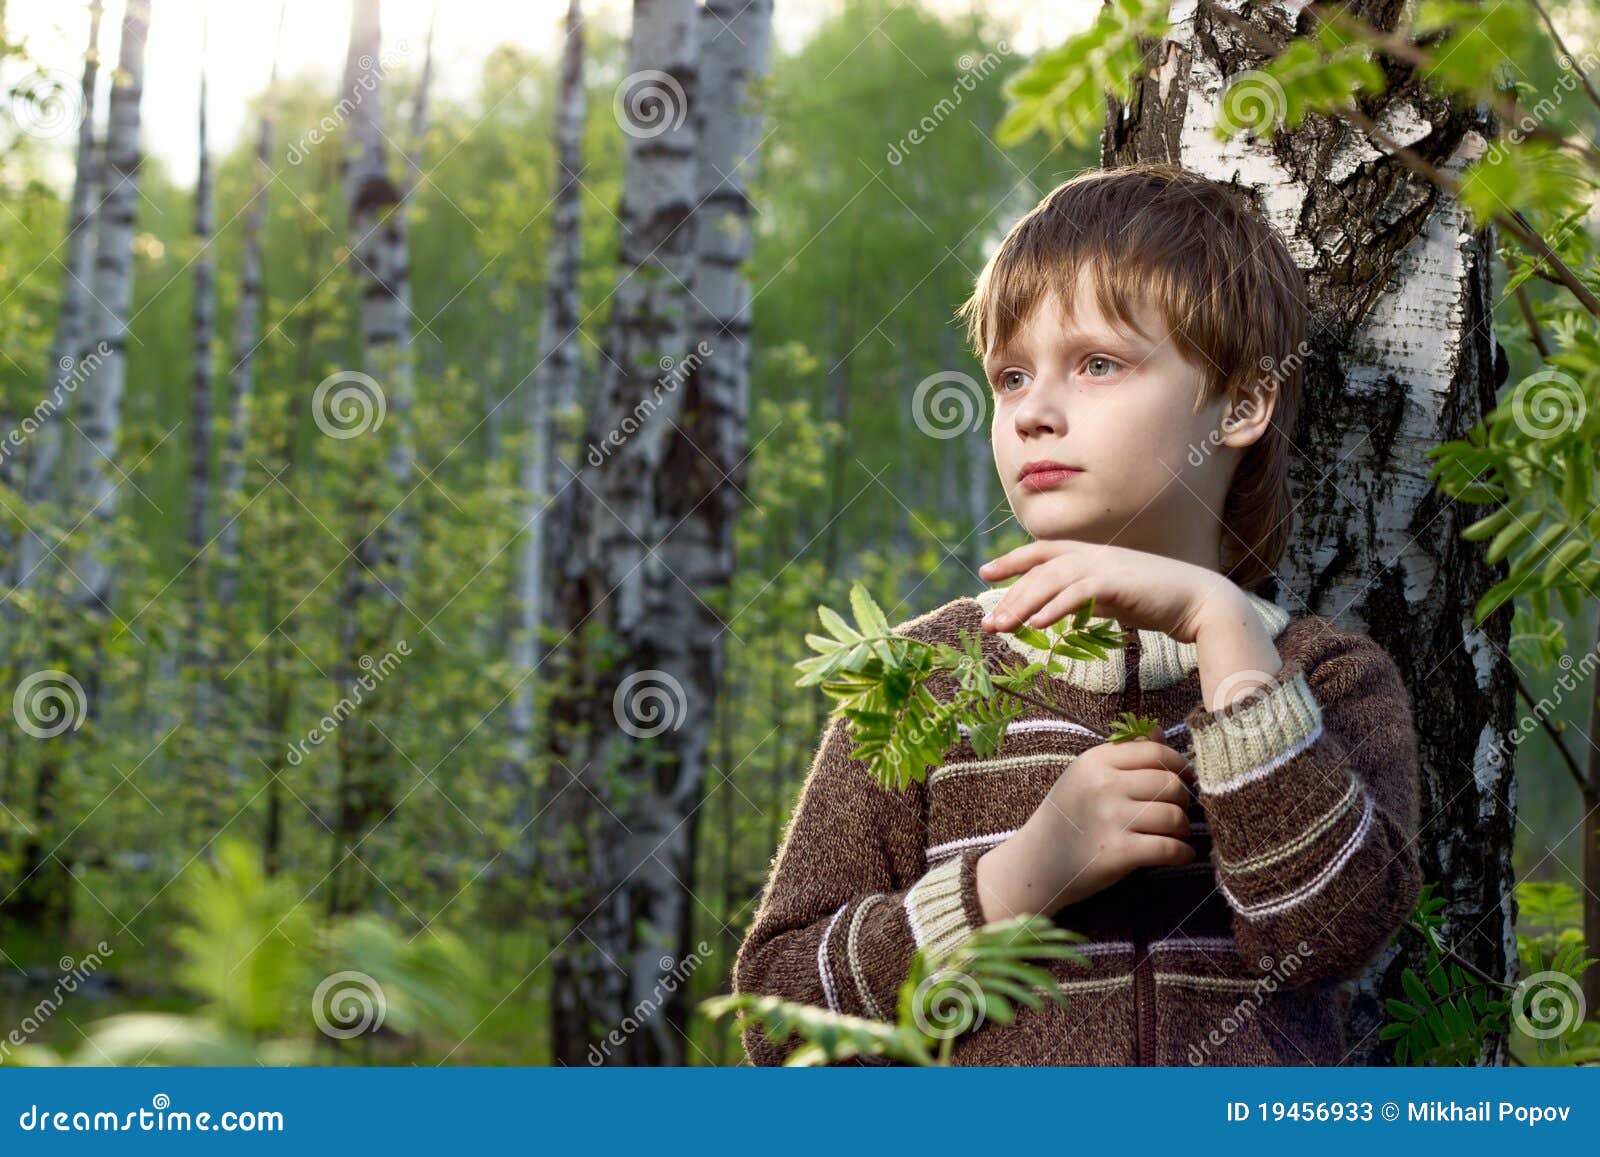 Мальчик березка. Дети в Березовом лесу. Мальчик на Березе. Мальчишки у берёзы. Береза девочка и мальчик.